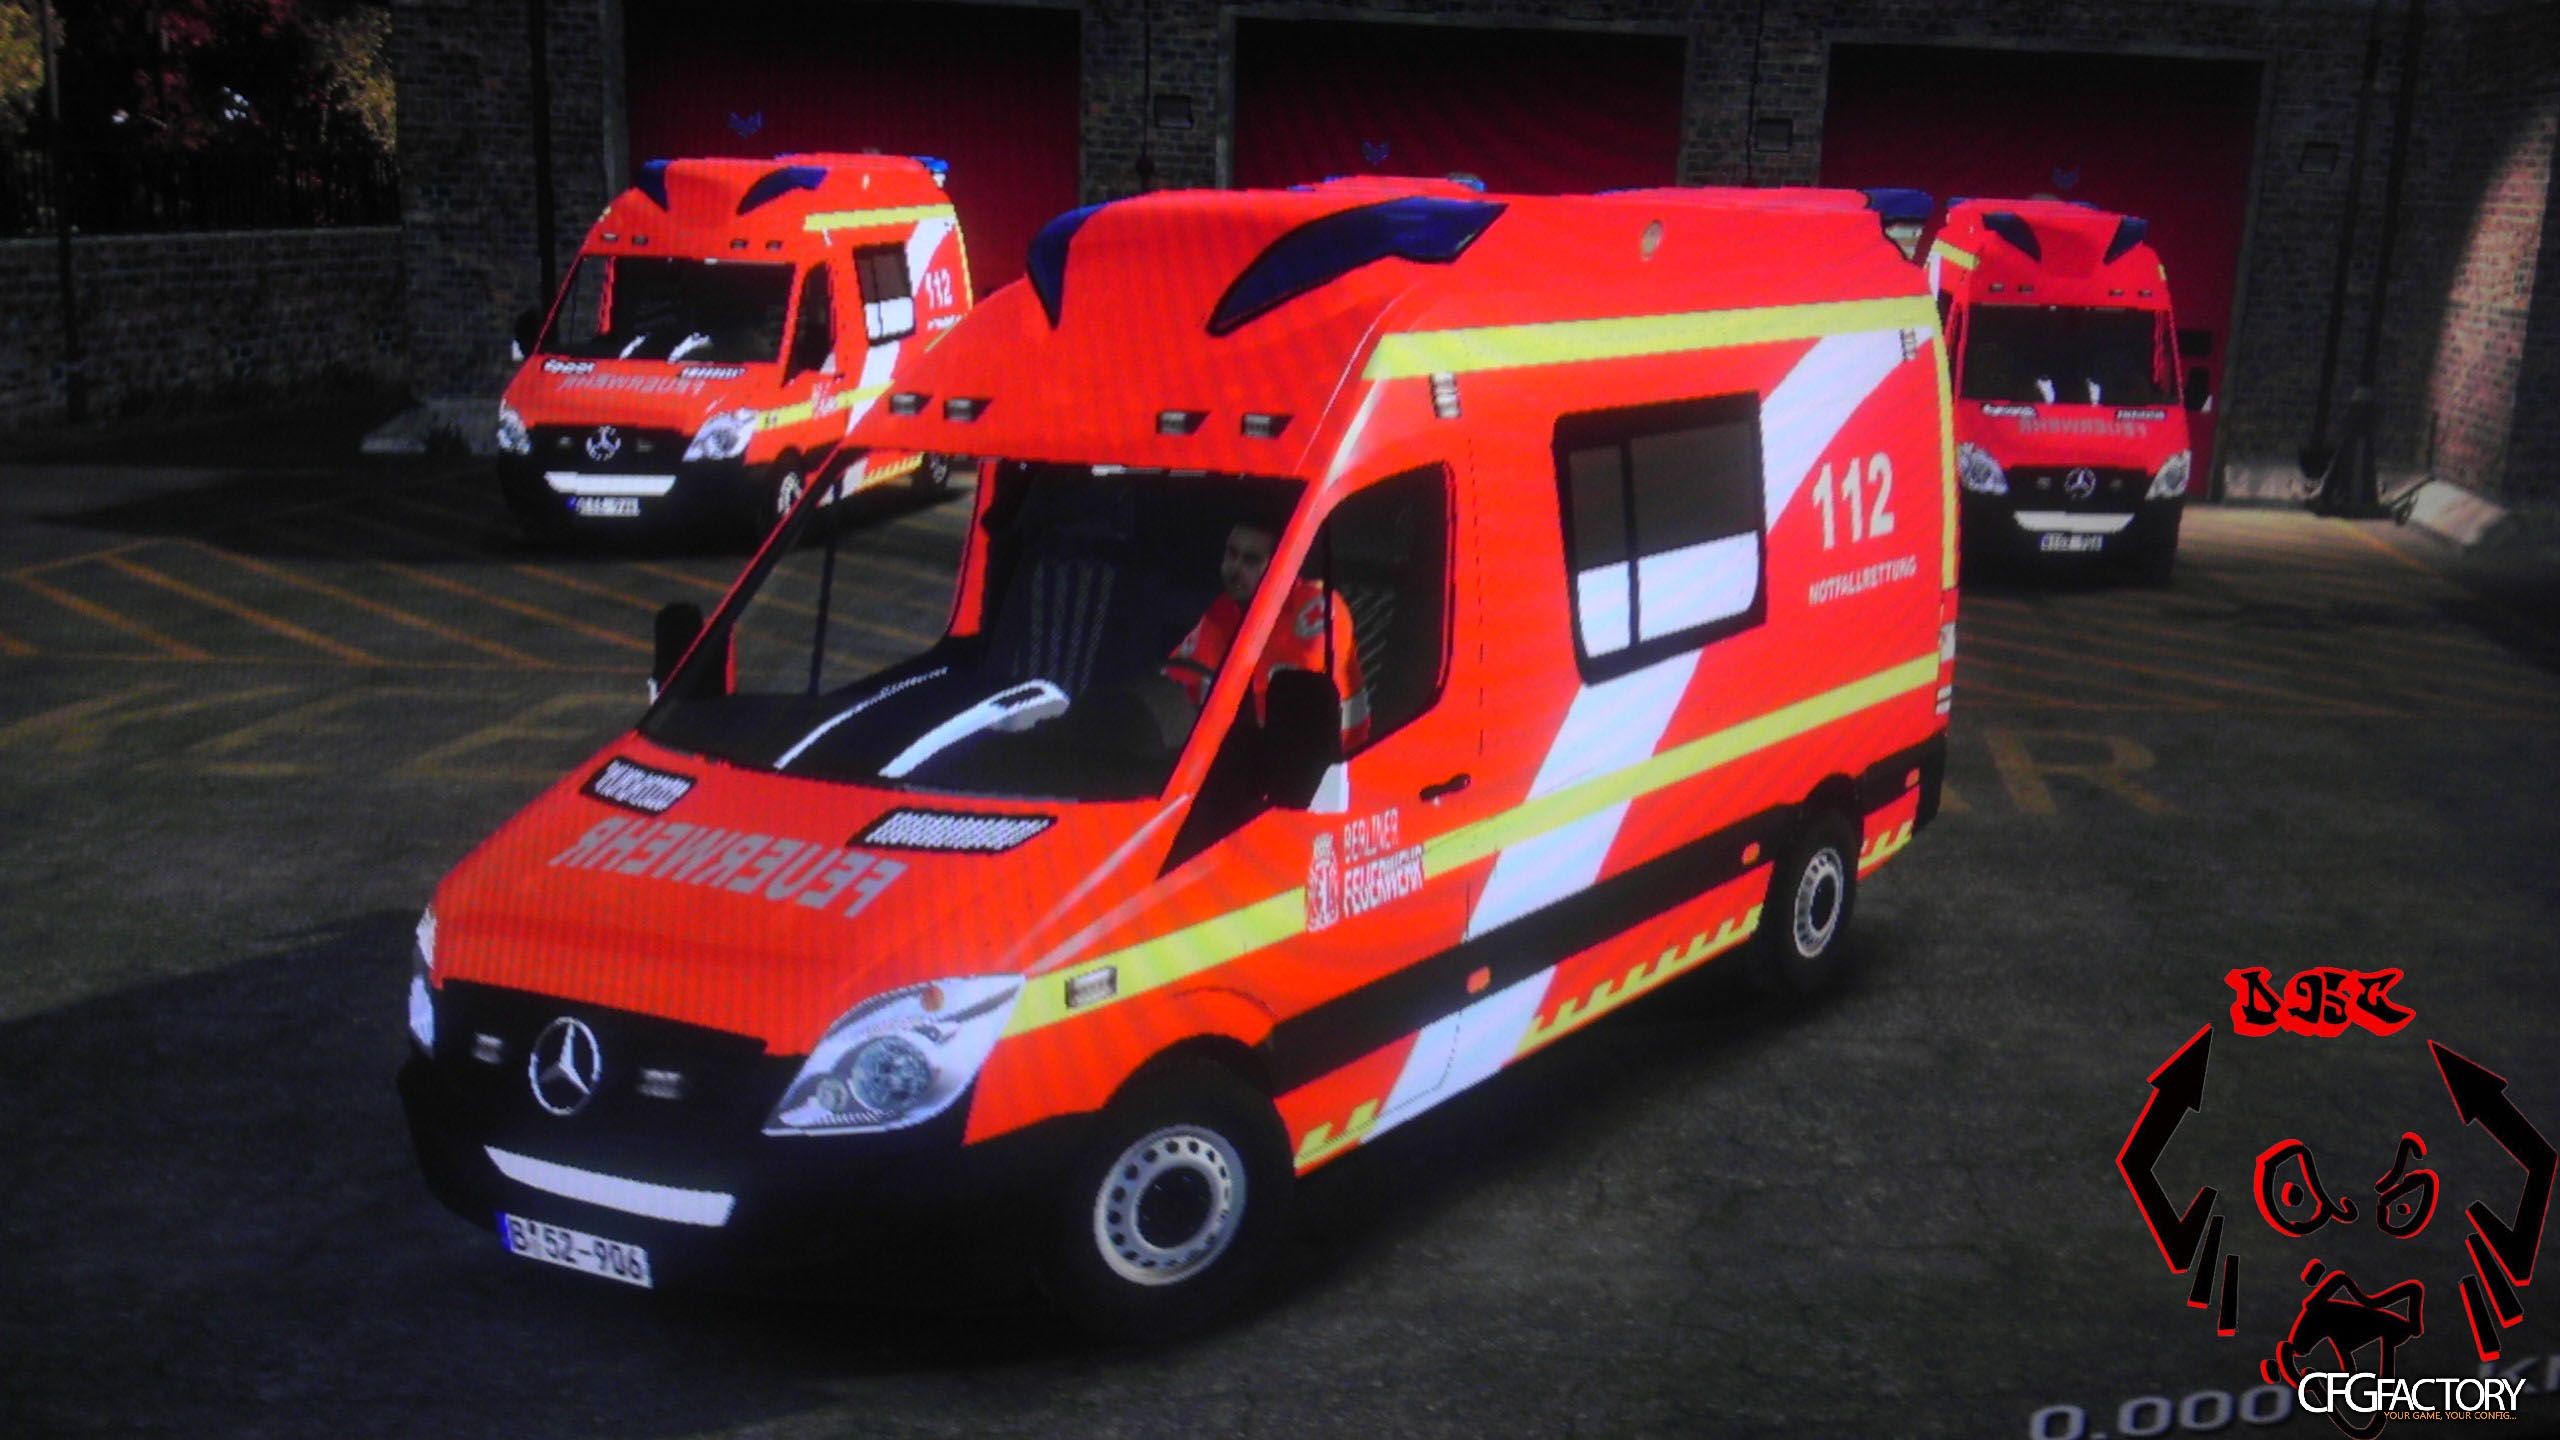 2560x1440 German Ambulance V2 Berliner Feuerwehr